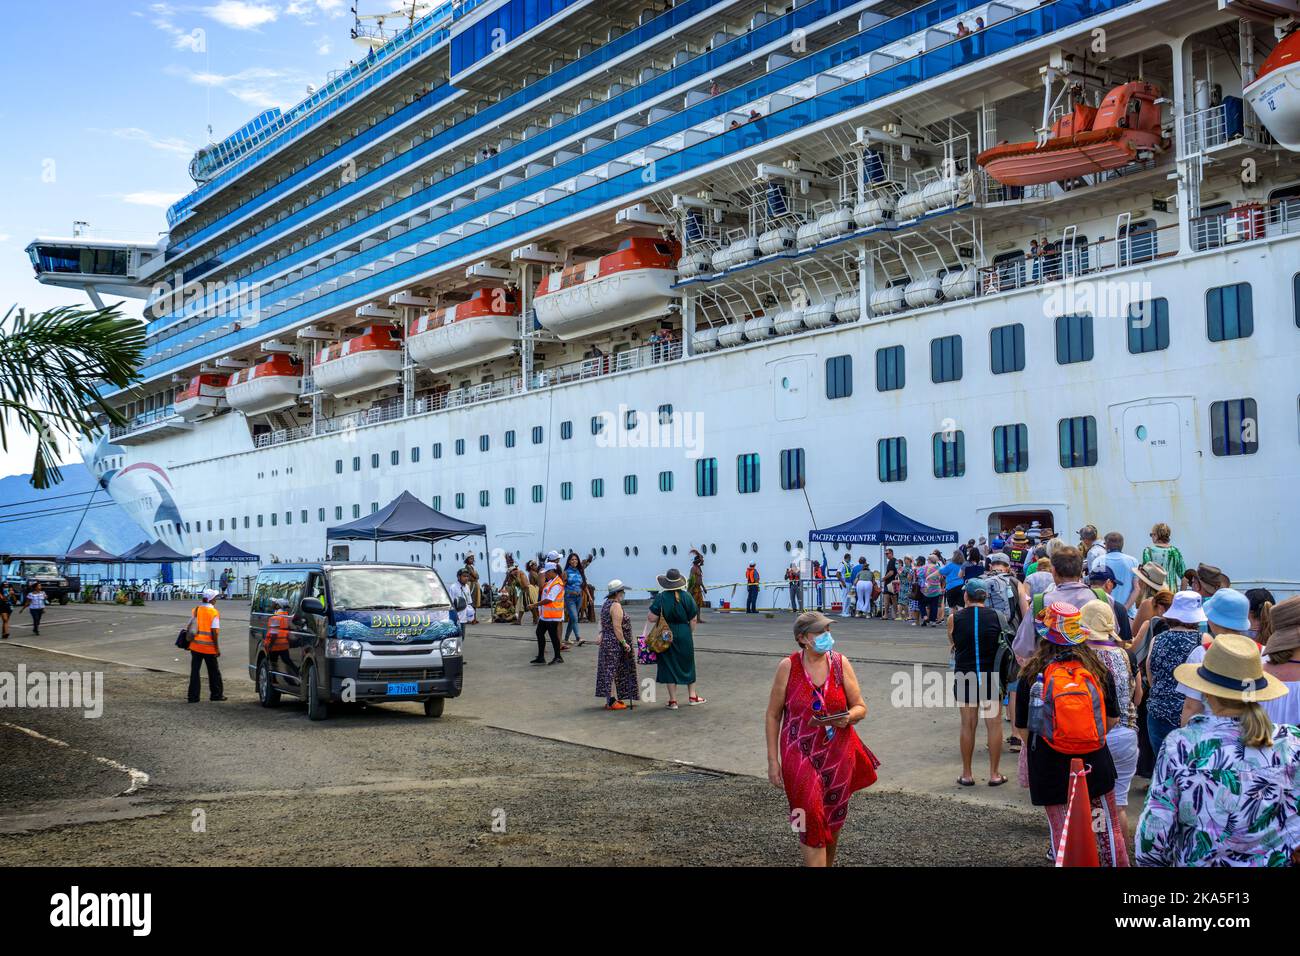 Passagers embarquant et débarquant du bateau de croisière Alotau, province de Milne Bay, Papouasie-Nouvelle-Guinée Banque D'Images